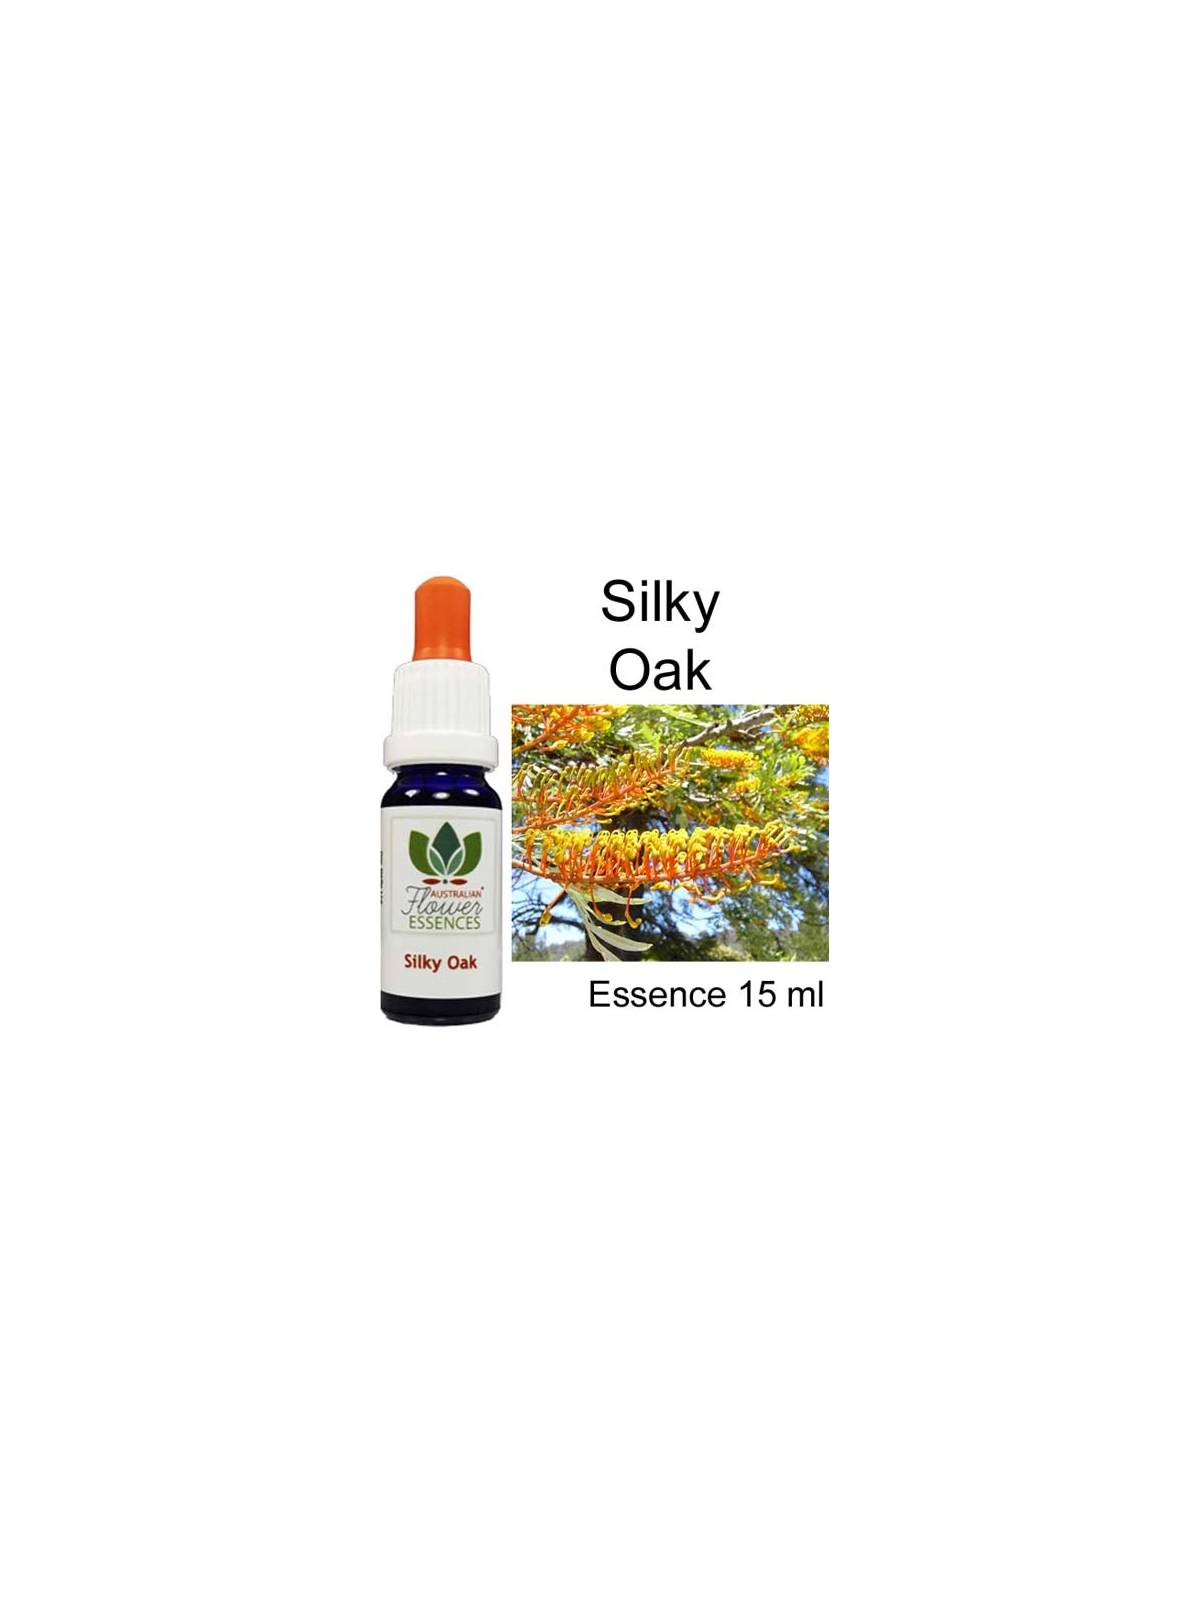 SILKY OAK 15 ml Australian Flower Essences